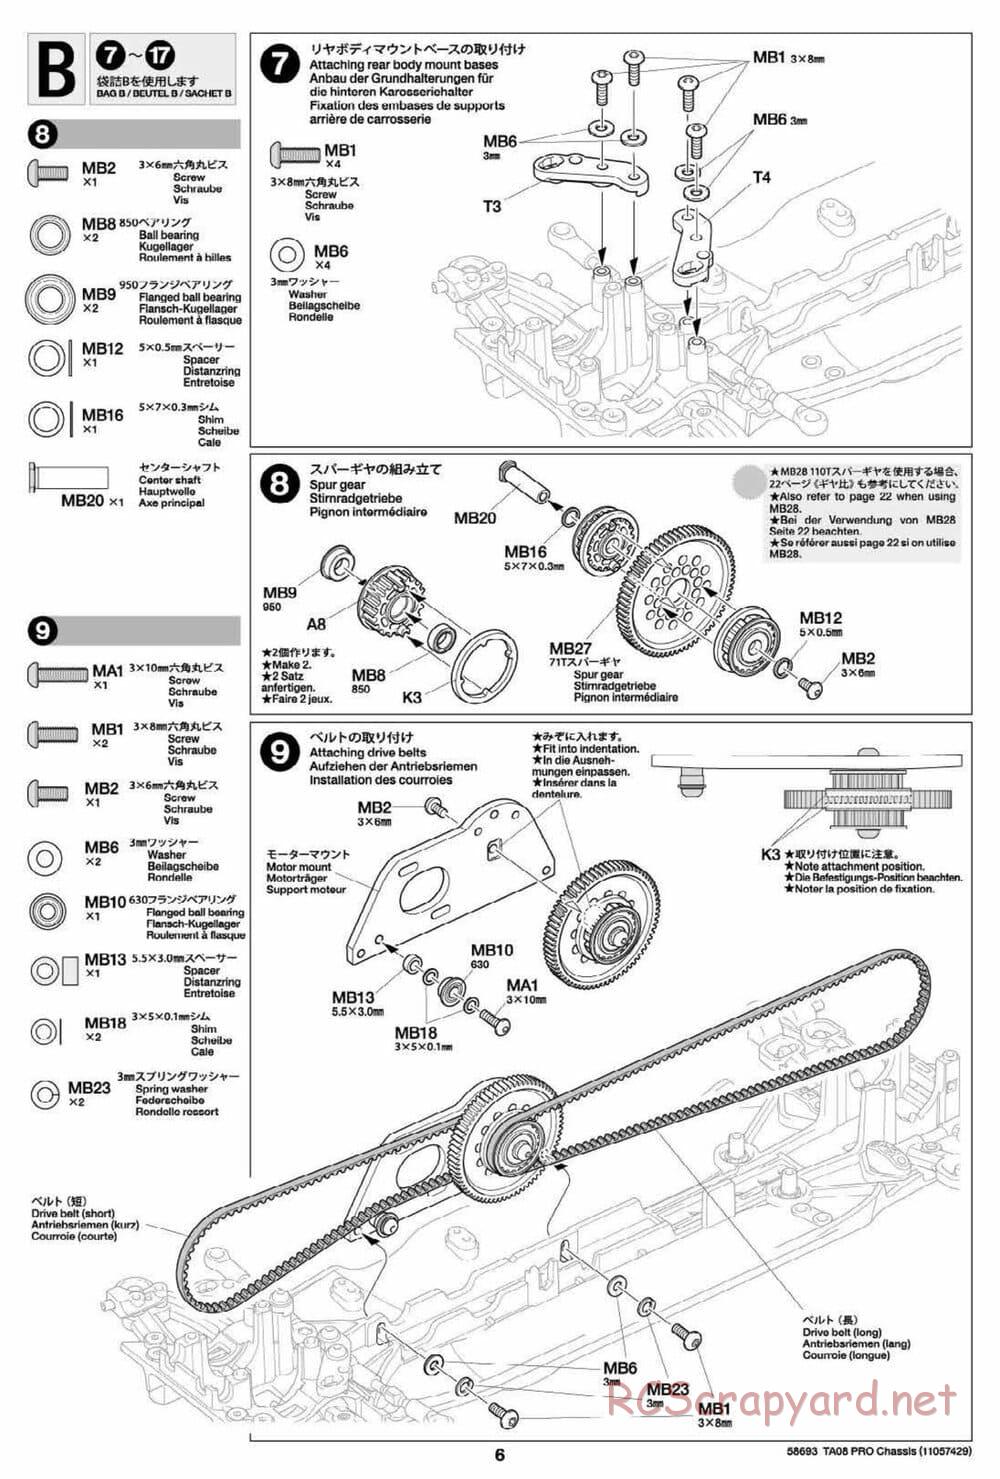 Tamiya - TA08 Pro Chassis - Manual - Page 6